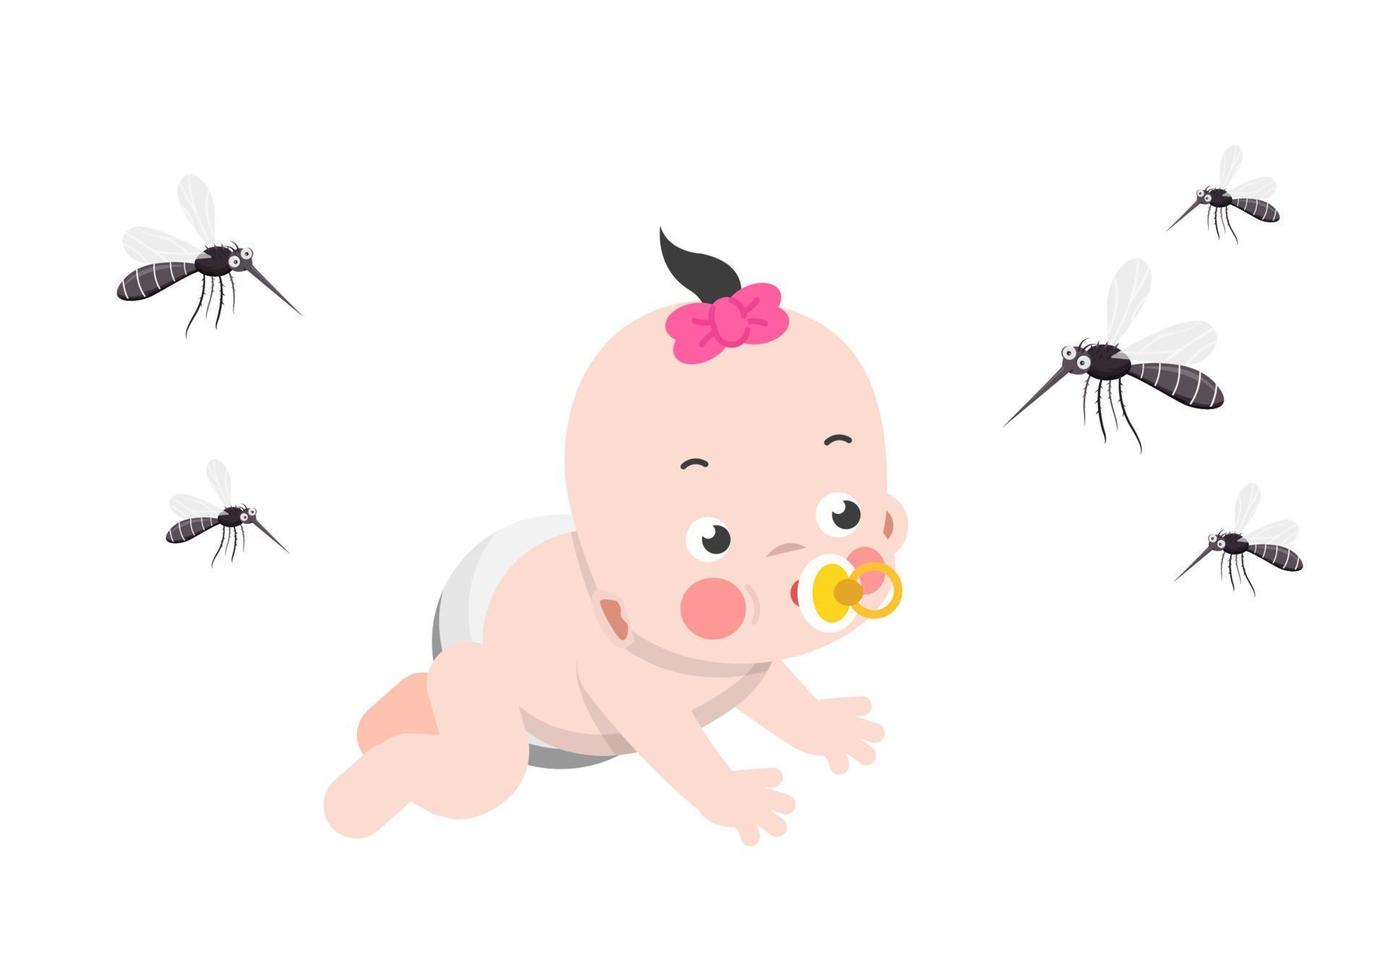 na casa e no quarto com as crianças deve-se ter cuidado para tomar cuidado com os mosquitos que transmitem a dengue. vetor de ilustração de desenhos animados de estilo simples